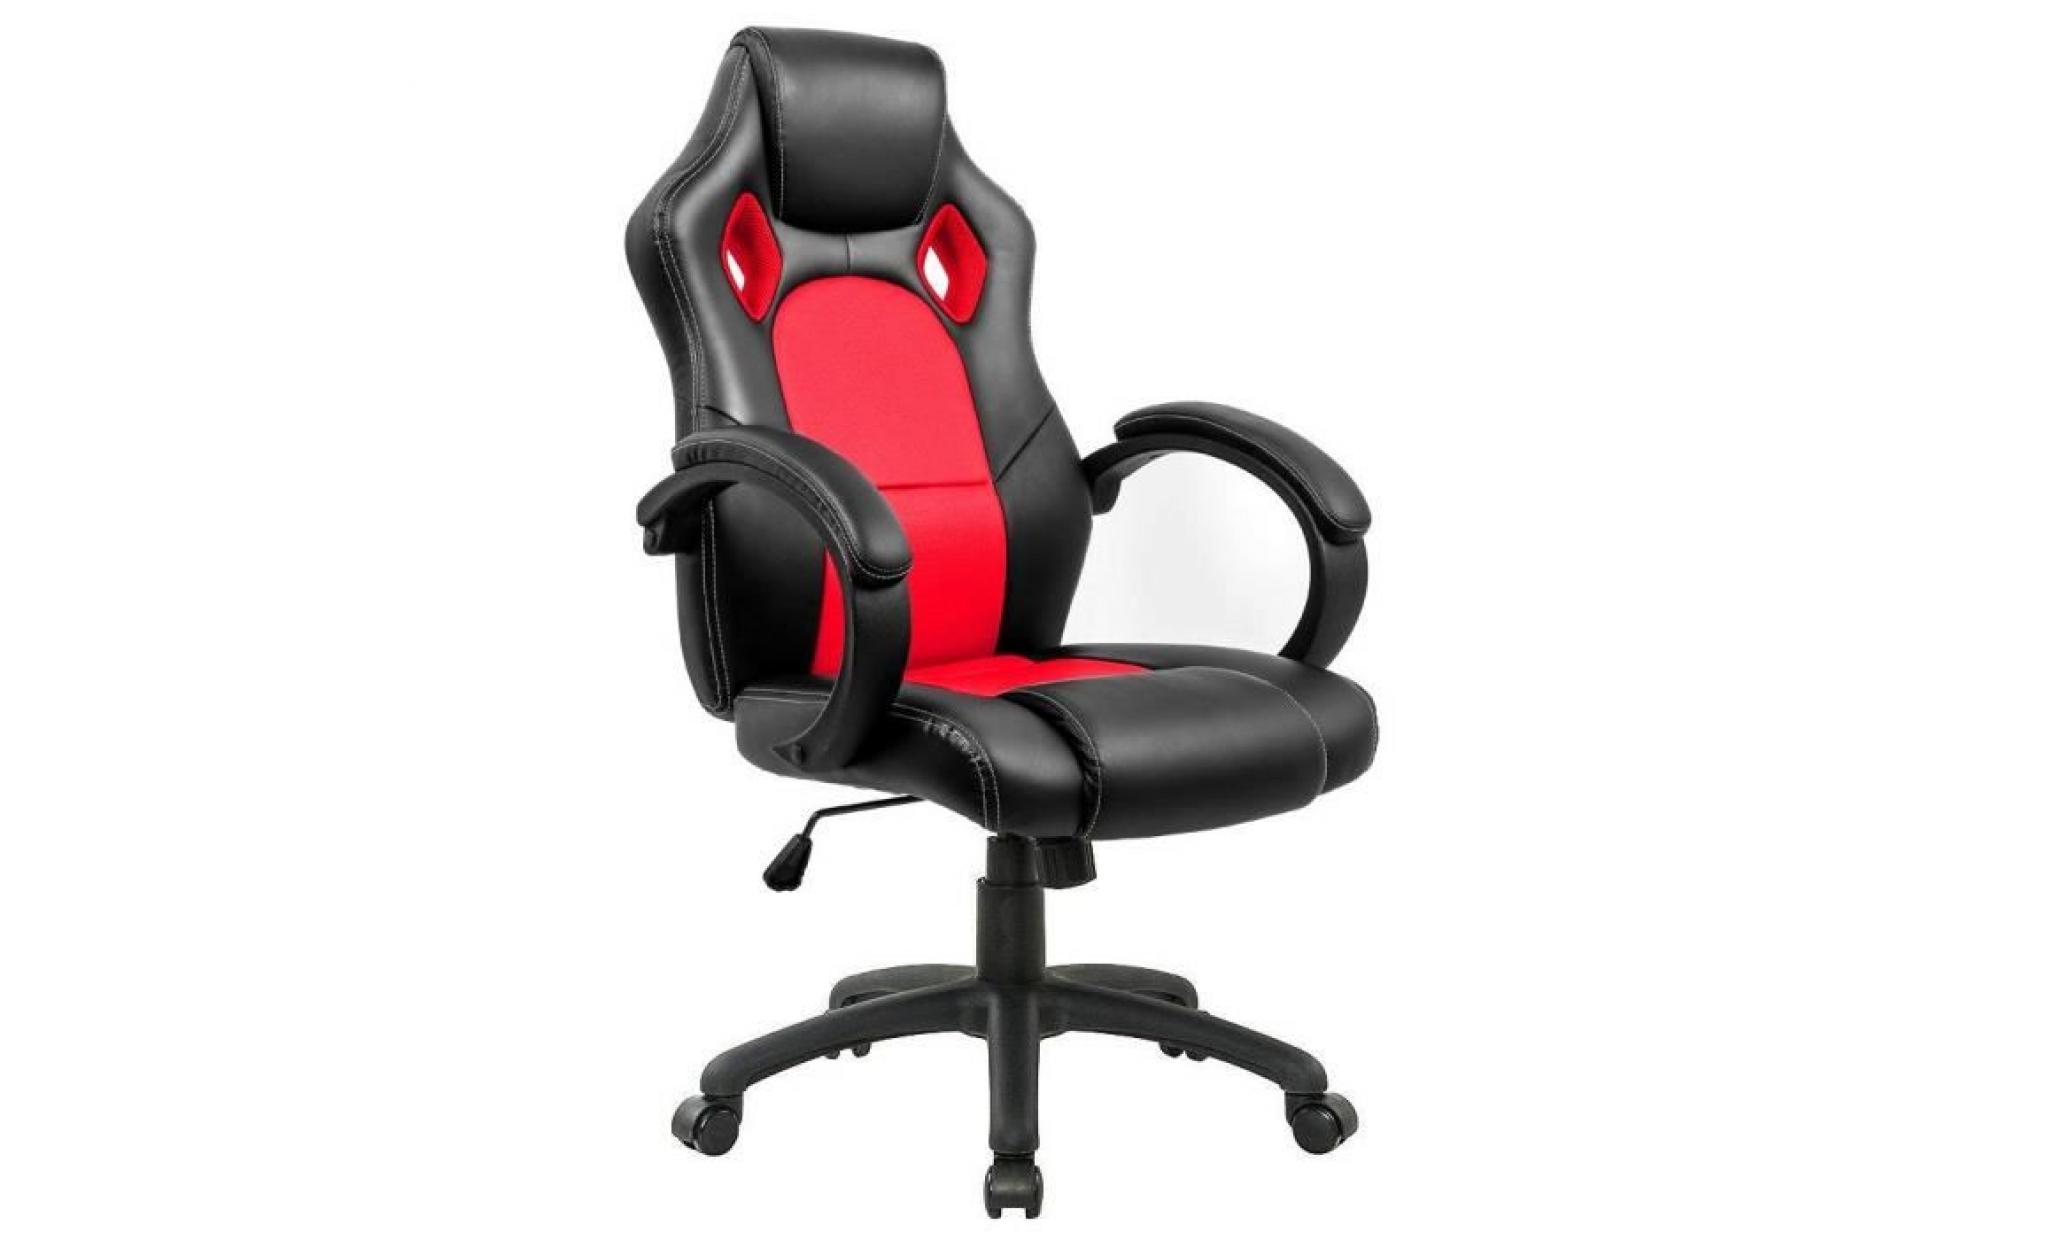 fauteuil de bureau chaise de bureau   moderne confortable ergonomique en similicuir   hauteur réglable   rouge   intimate wm heart